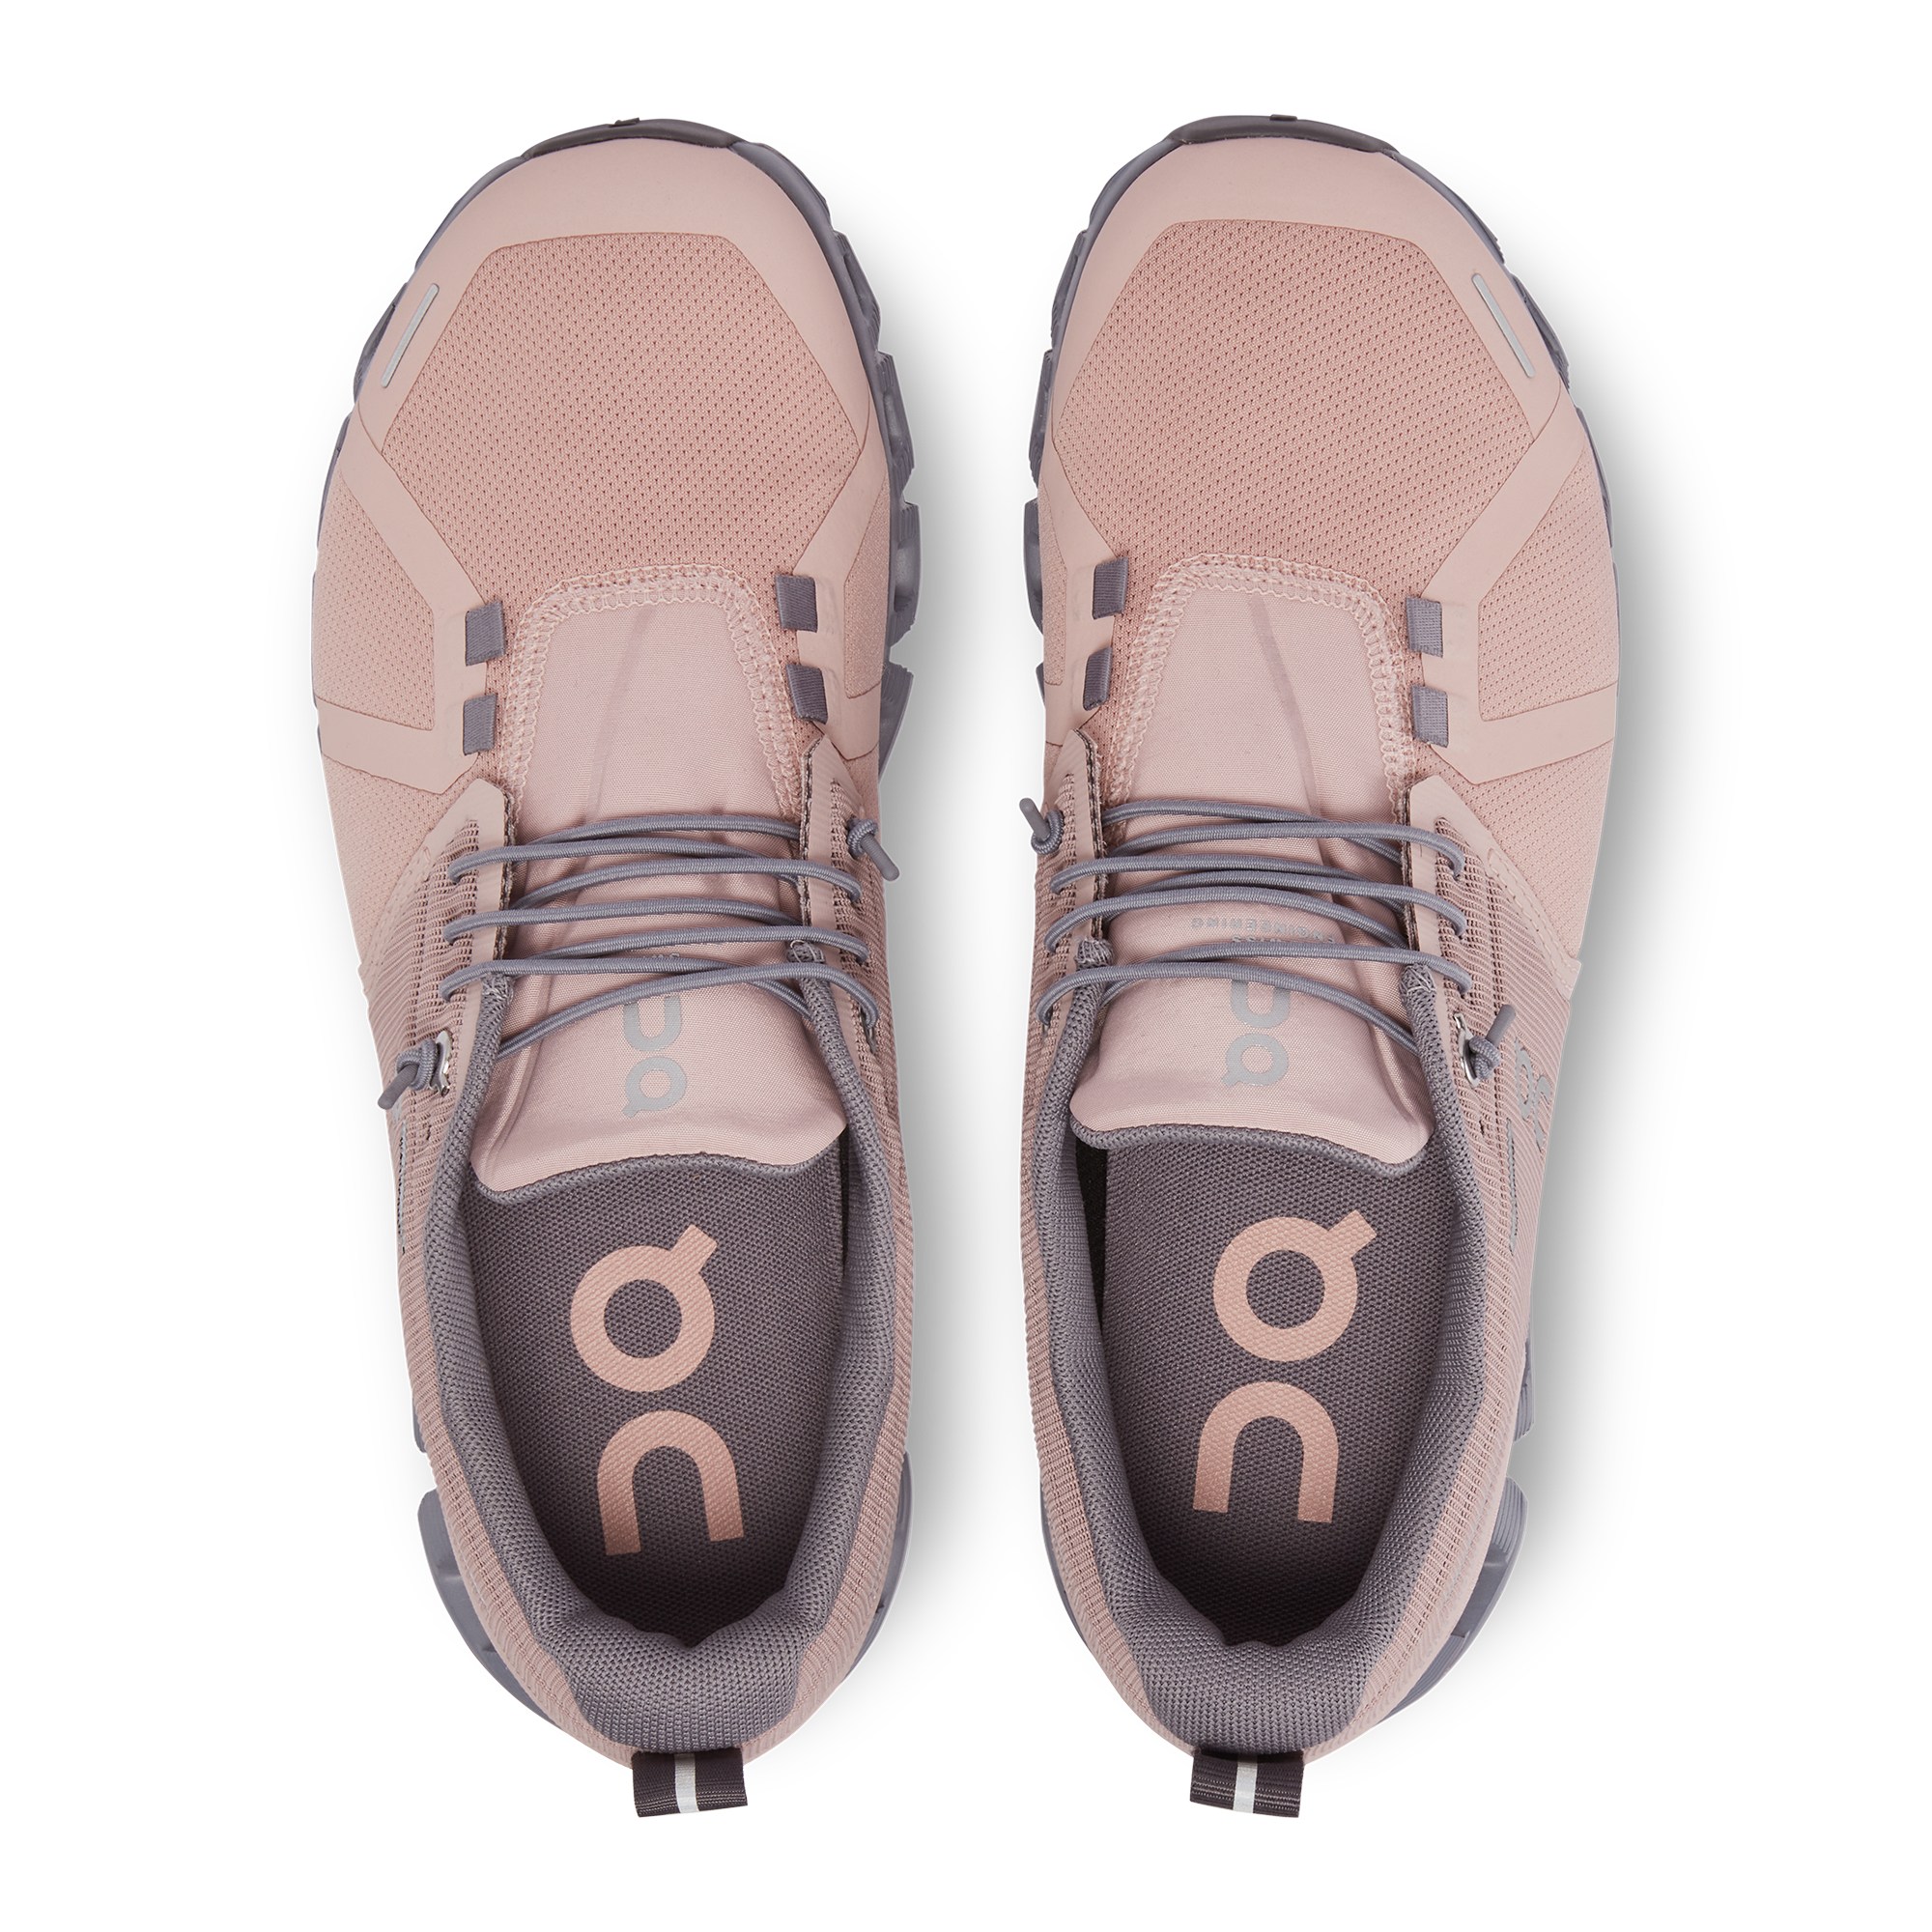 On Cloud 5 Waterproof Shoes - Women's